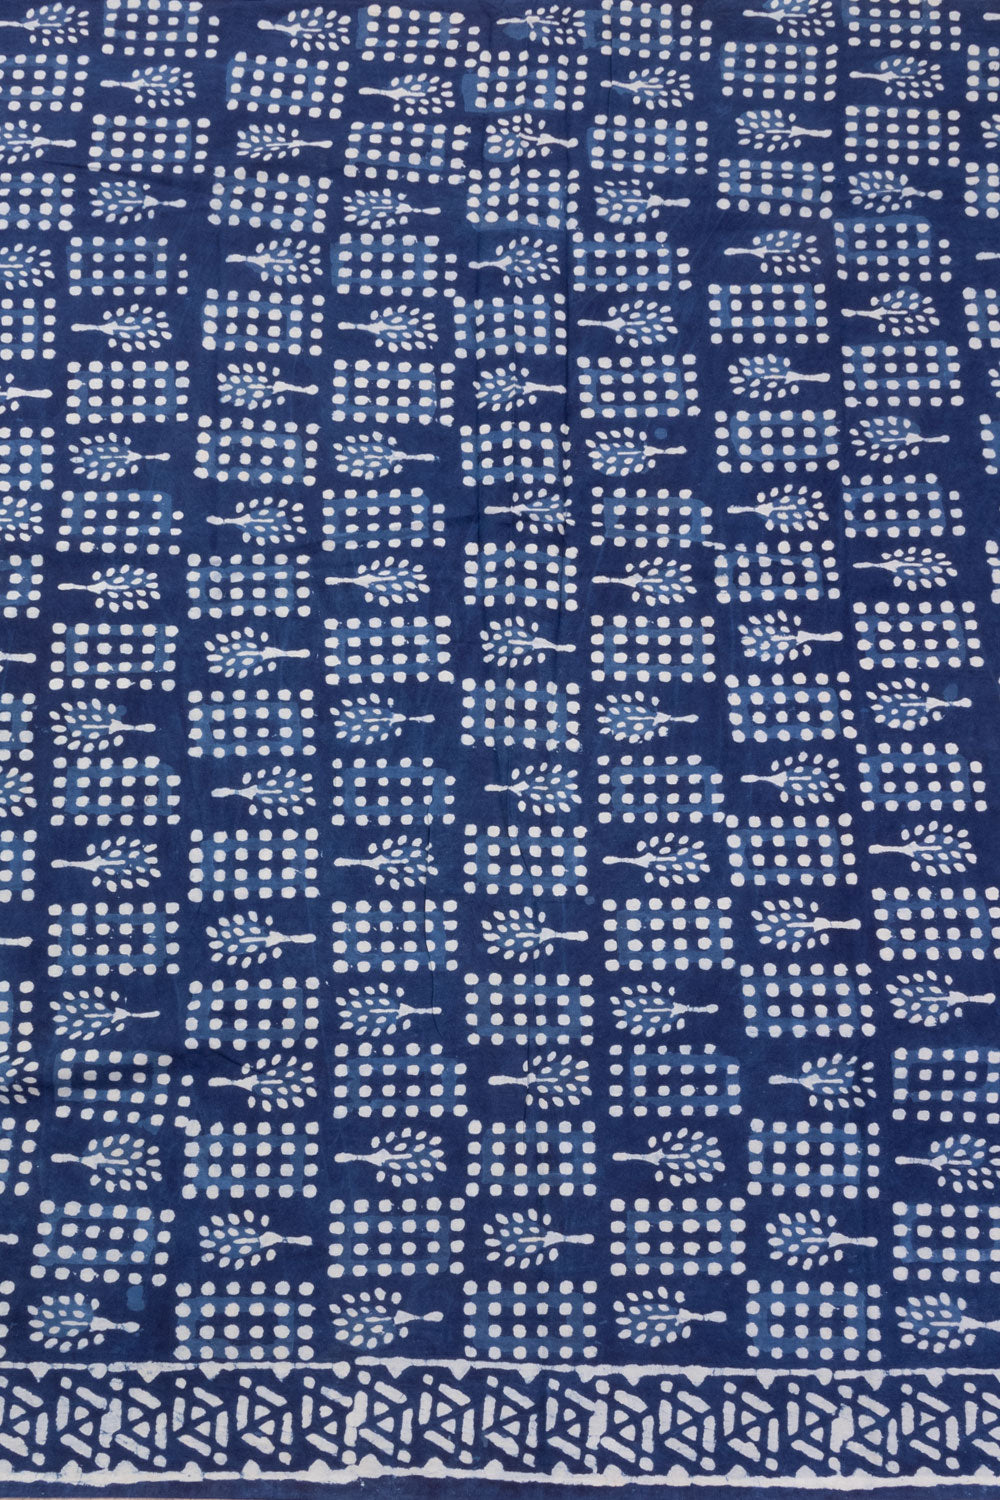 Navy Blue 3-Piece Mulmul Cotton Salwar Suit Material 10068612Navy Blue 3-Piece Mulmul Cotton Salwar Suit Material 10068612